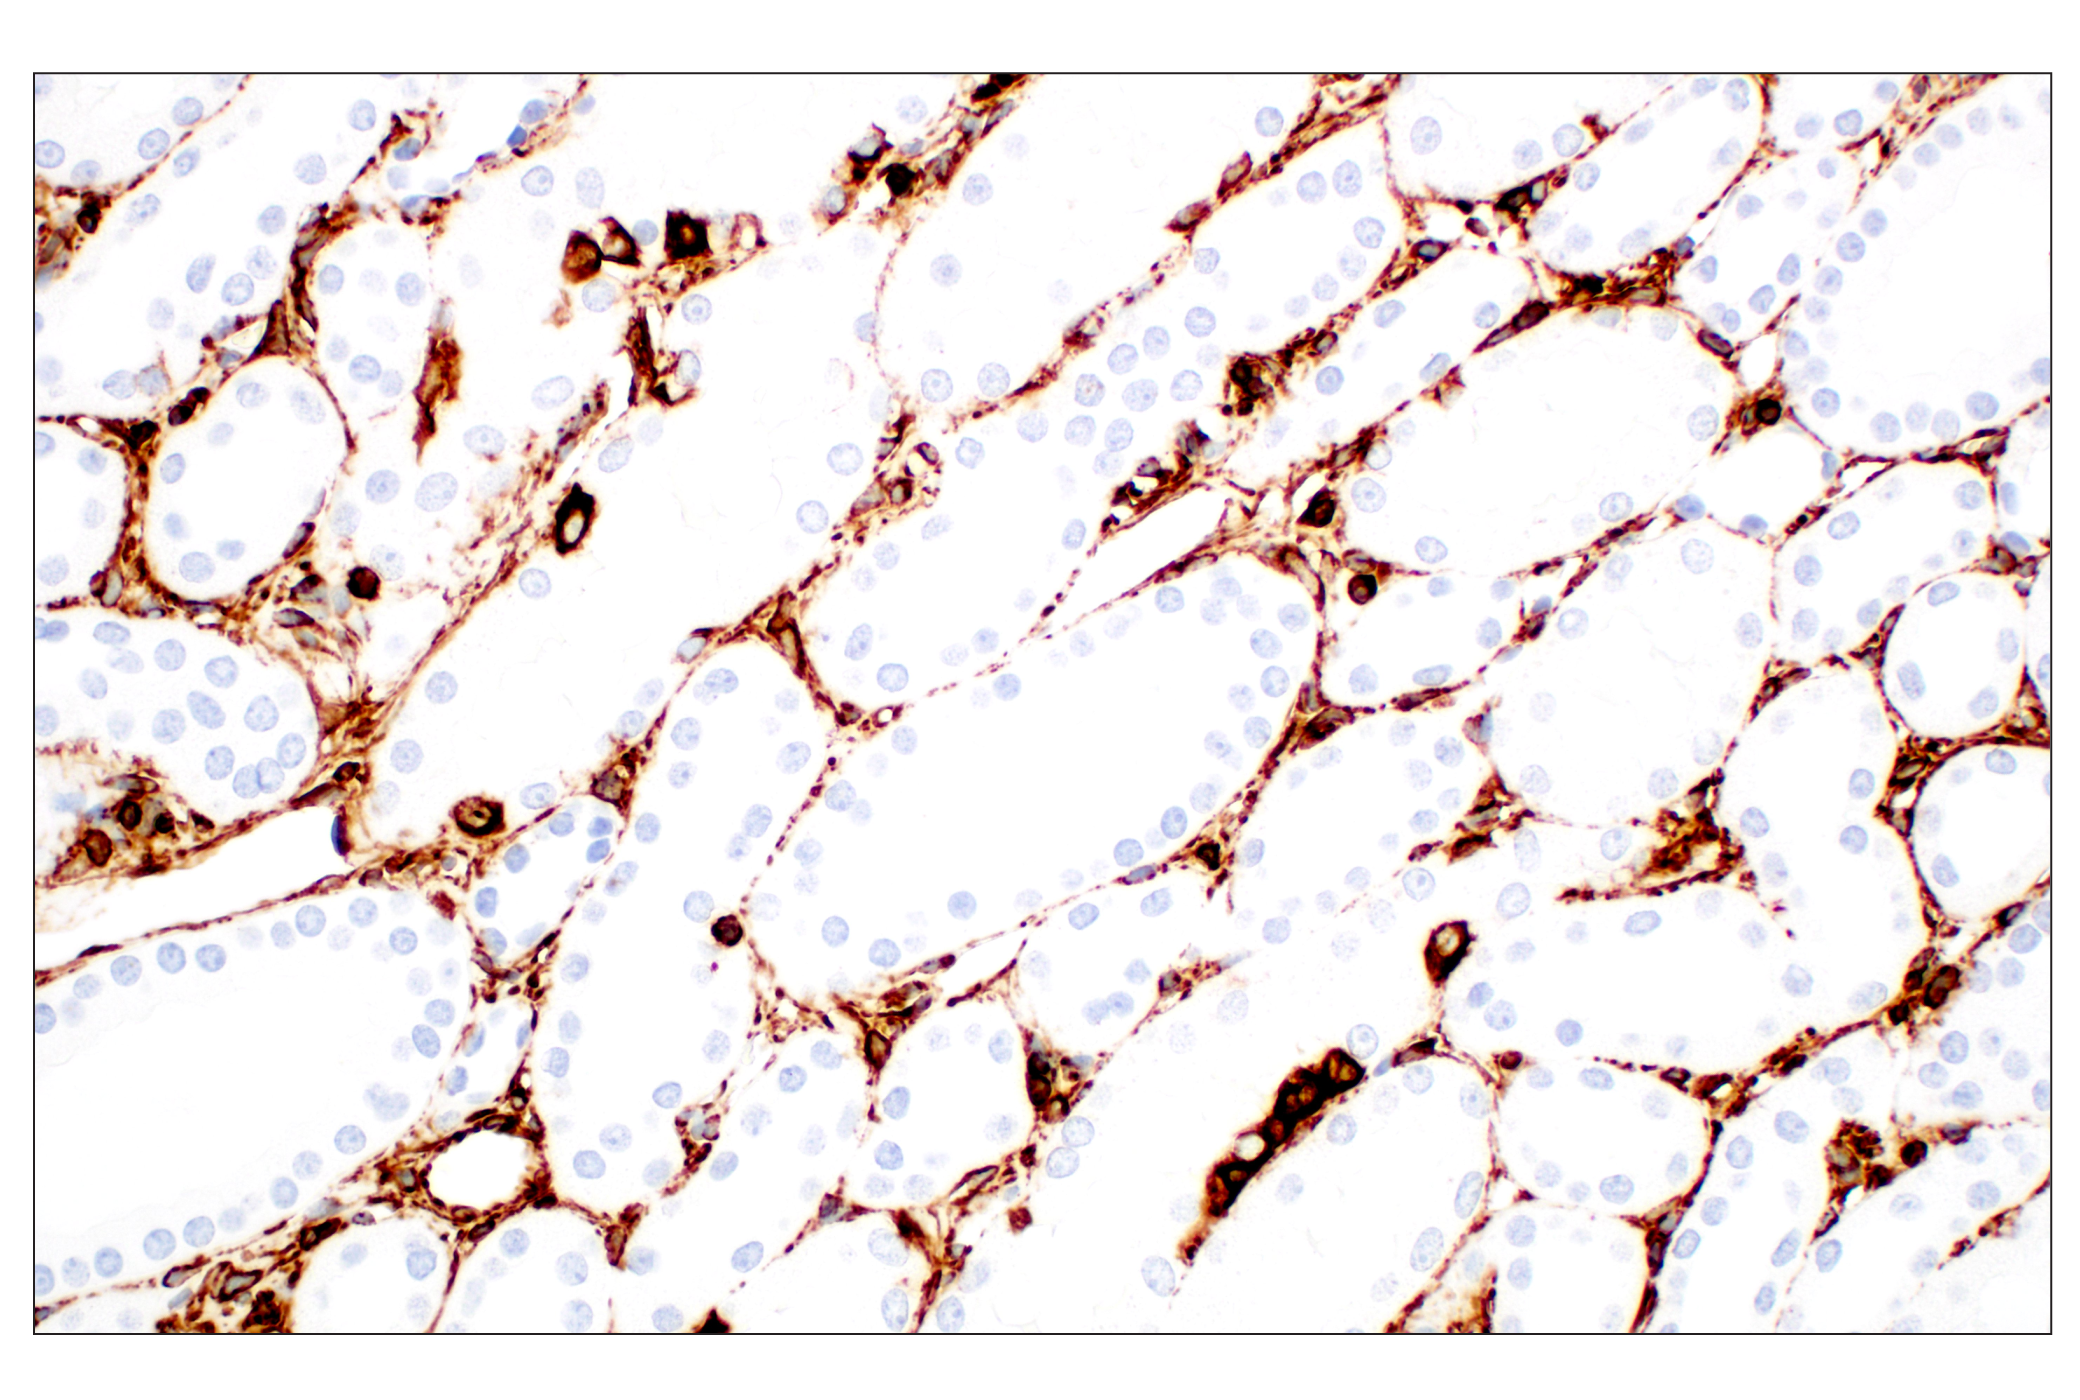  Image 30: Cell Fractionation Antibody Sampler Kit